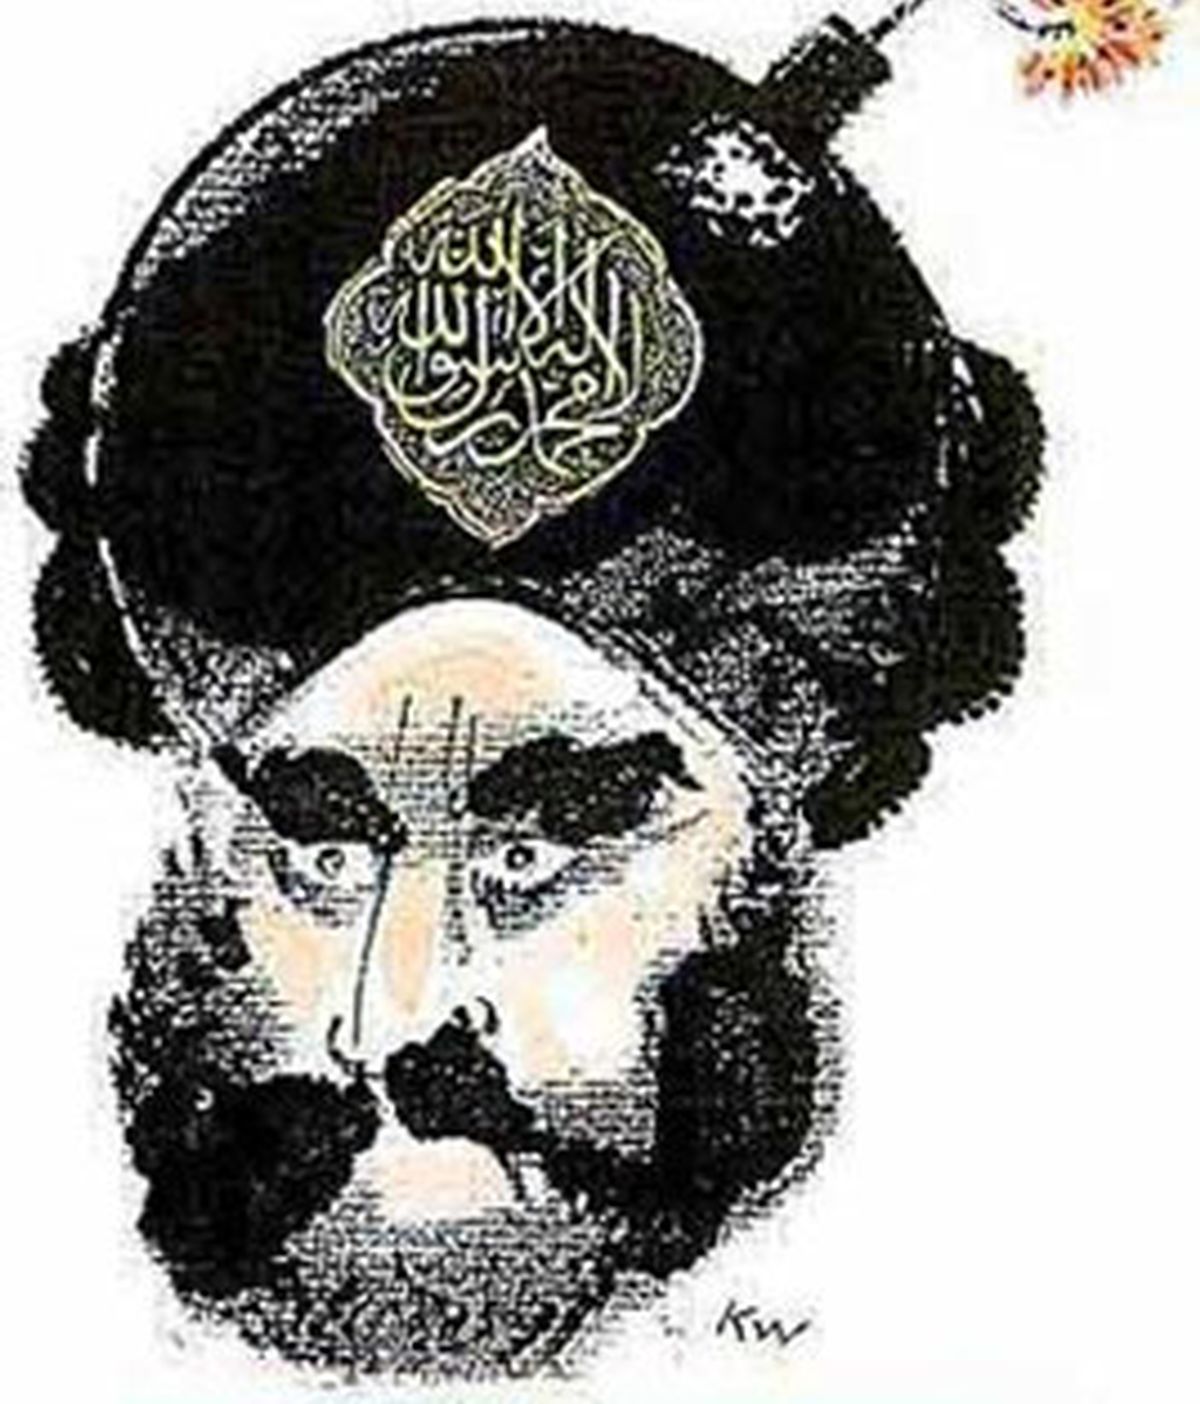 La caricatura de Mahoma con un turbante y una bomba que desató la ira del mundo islámico.